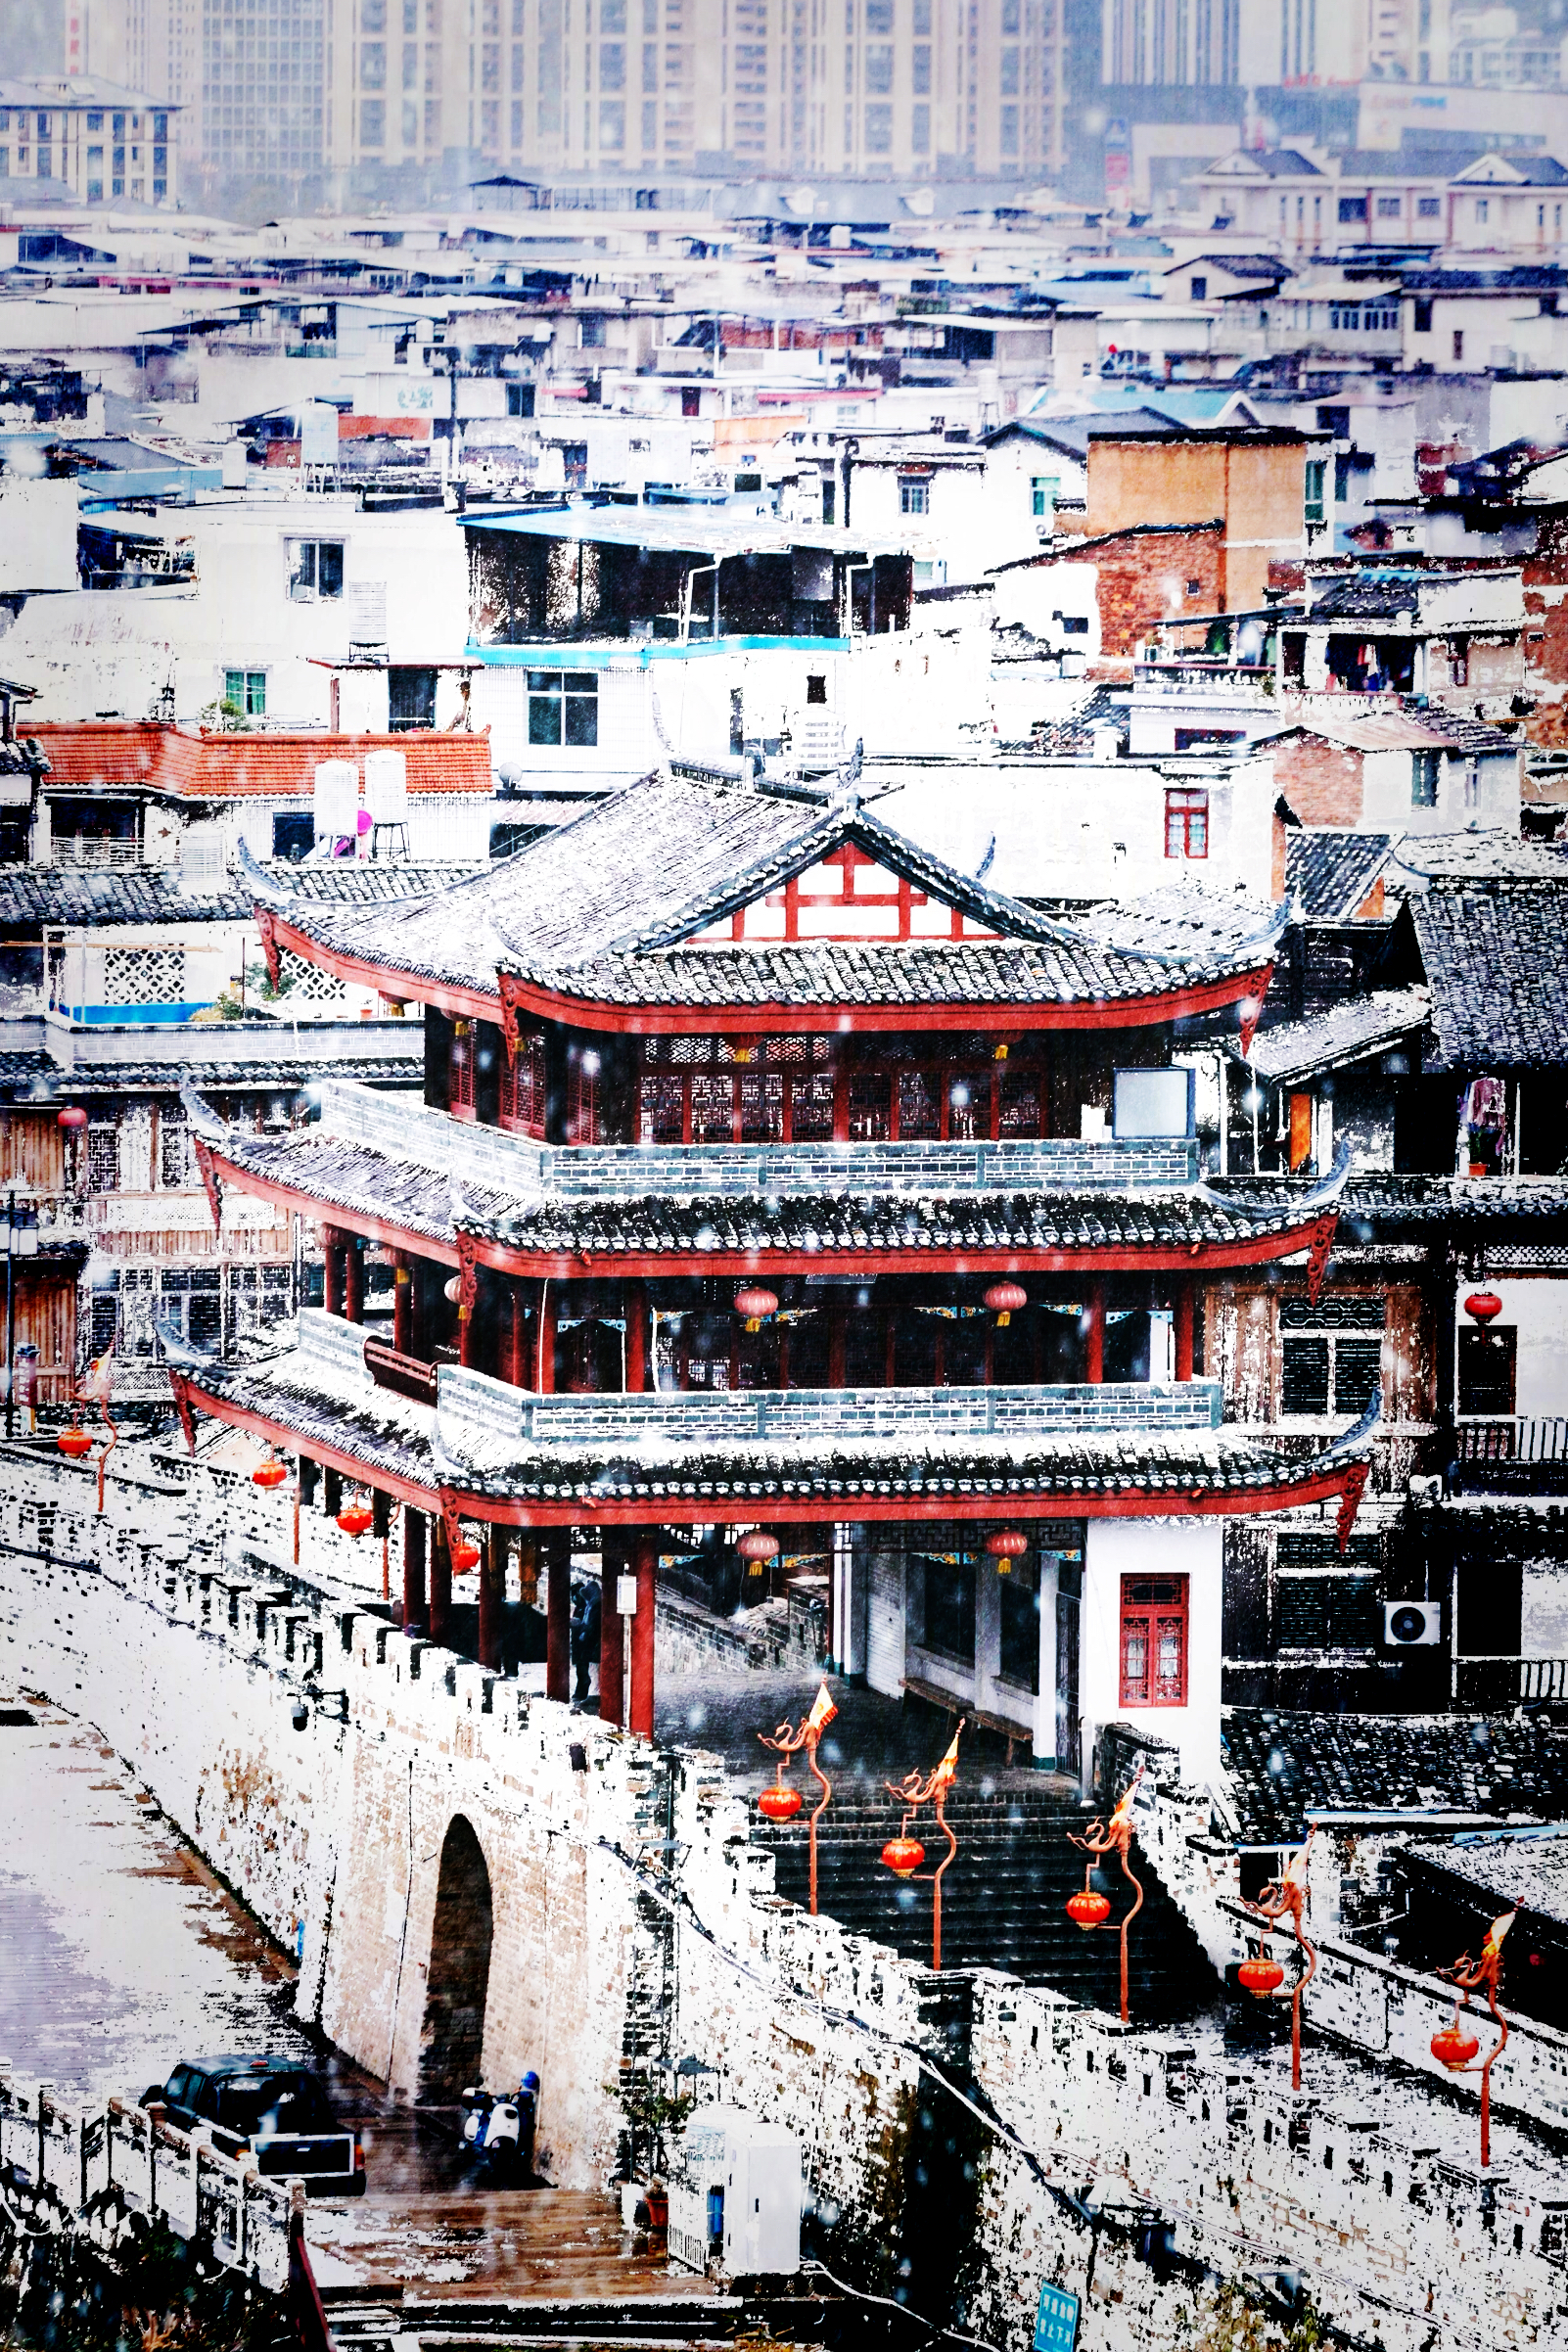 国际友人路易艾黎说过“中国有最美古镇之一长汀古城